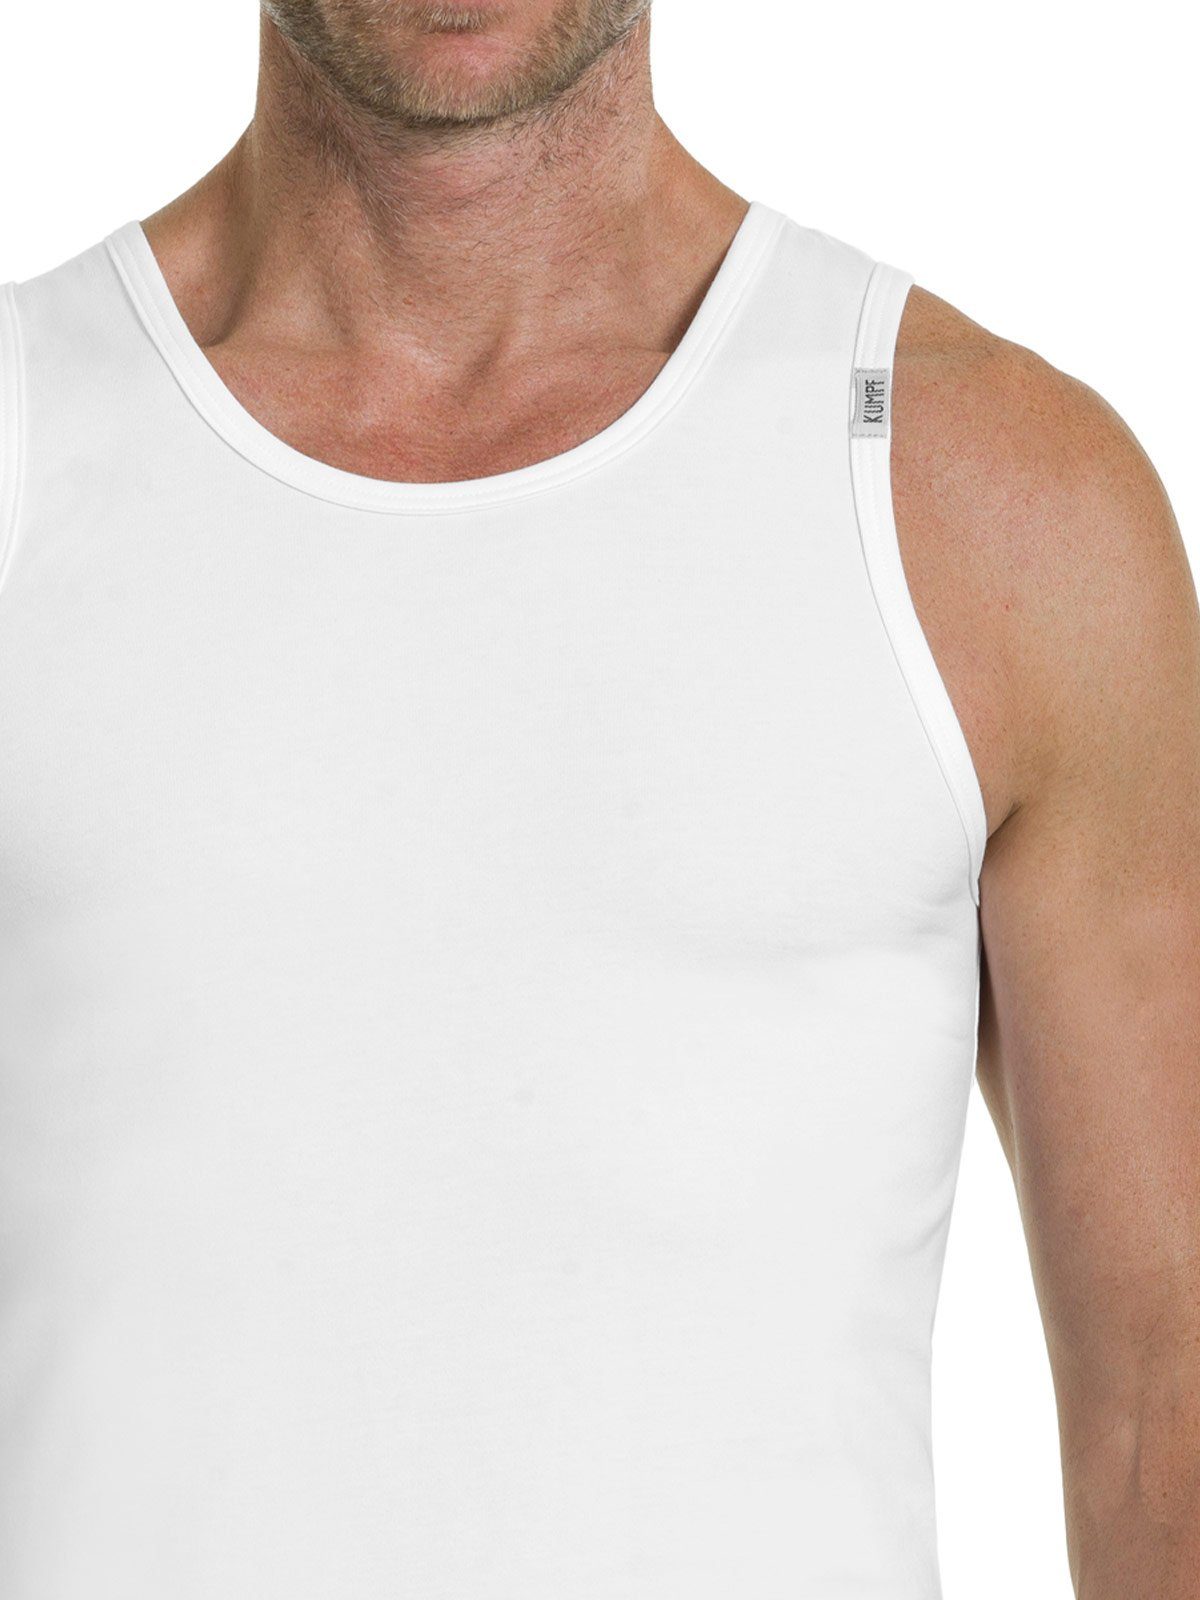 KUMPF Achselhemd 2er Sparpack Herren 2-St) Markenqualität Cotton Unterhemd (Spar-Set, weiss hohe Bio